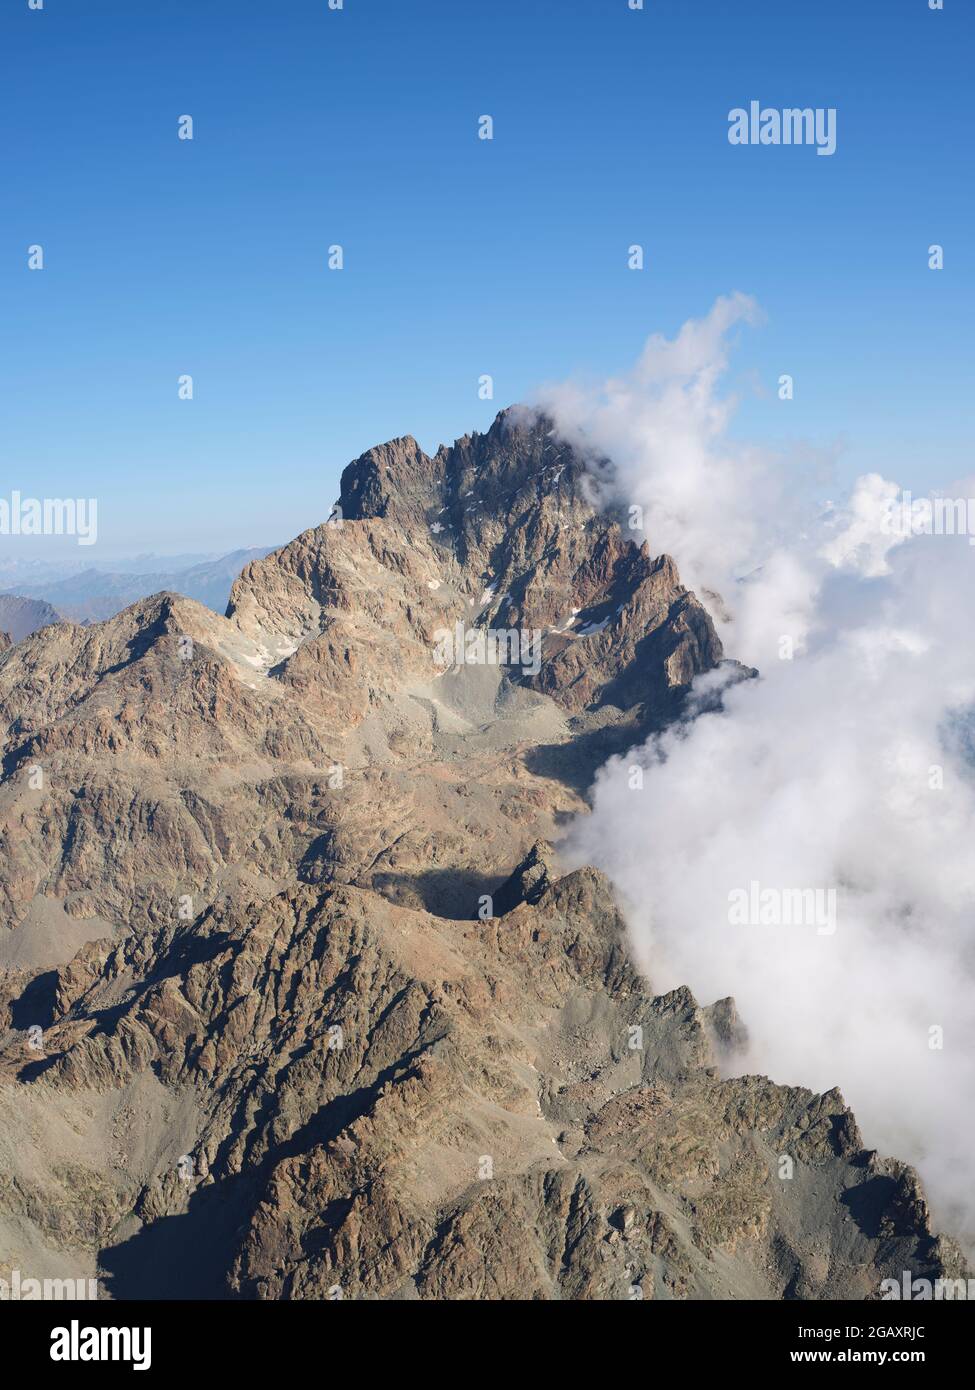 VISTA AEREA. Parete rocciosa a sud del Monte viso (3841 m) con nuvole ad est sopra la Pianura Padana. Provincia di Cuneo, Piemonte, Italia. Foto Stock